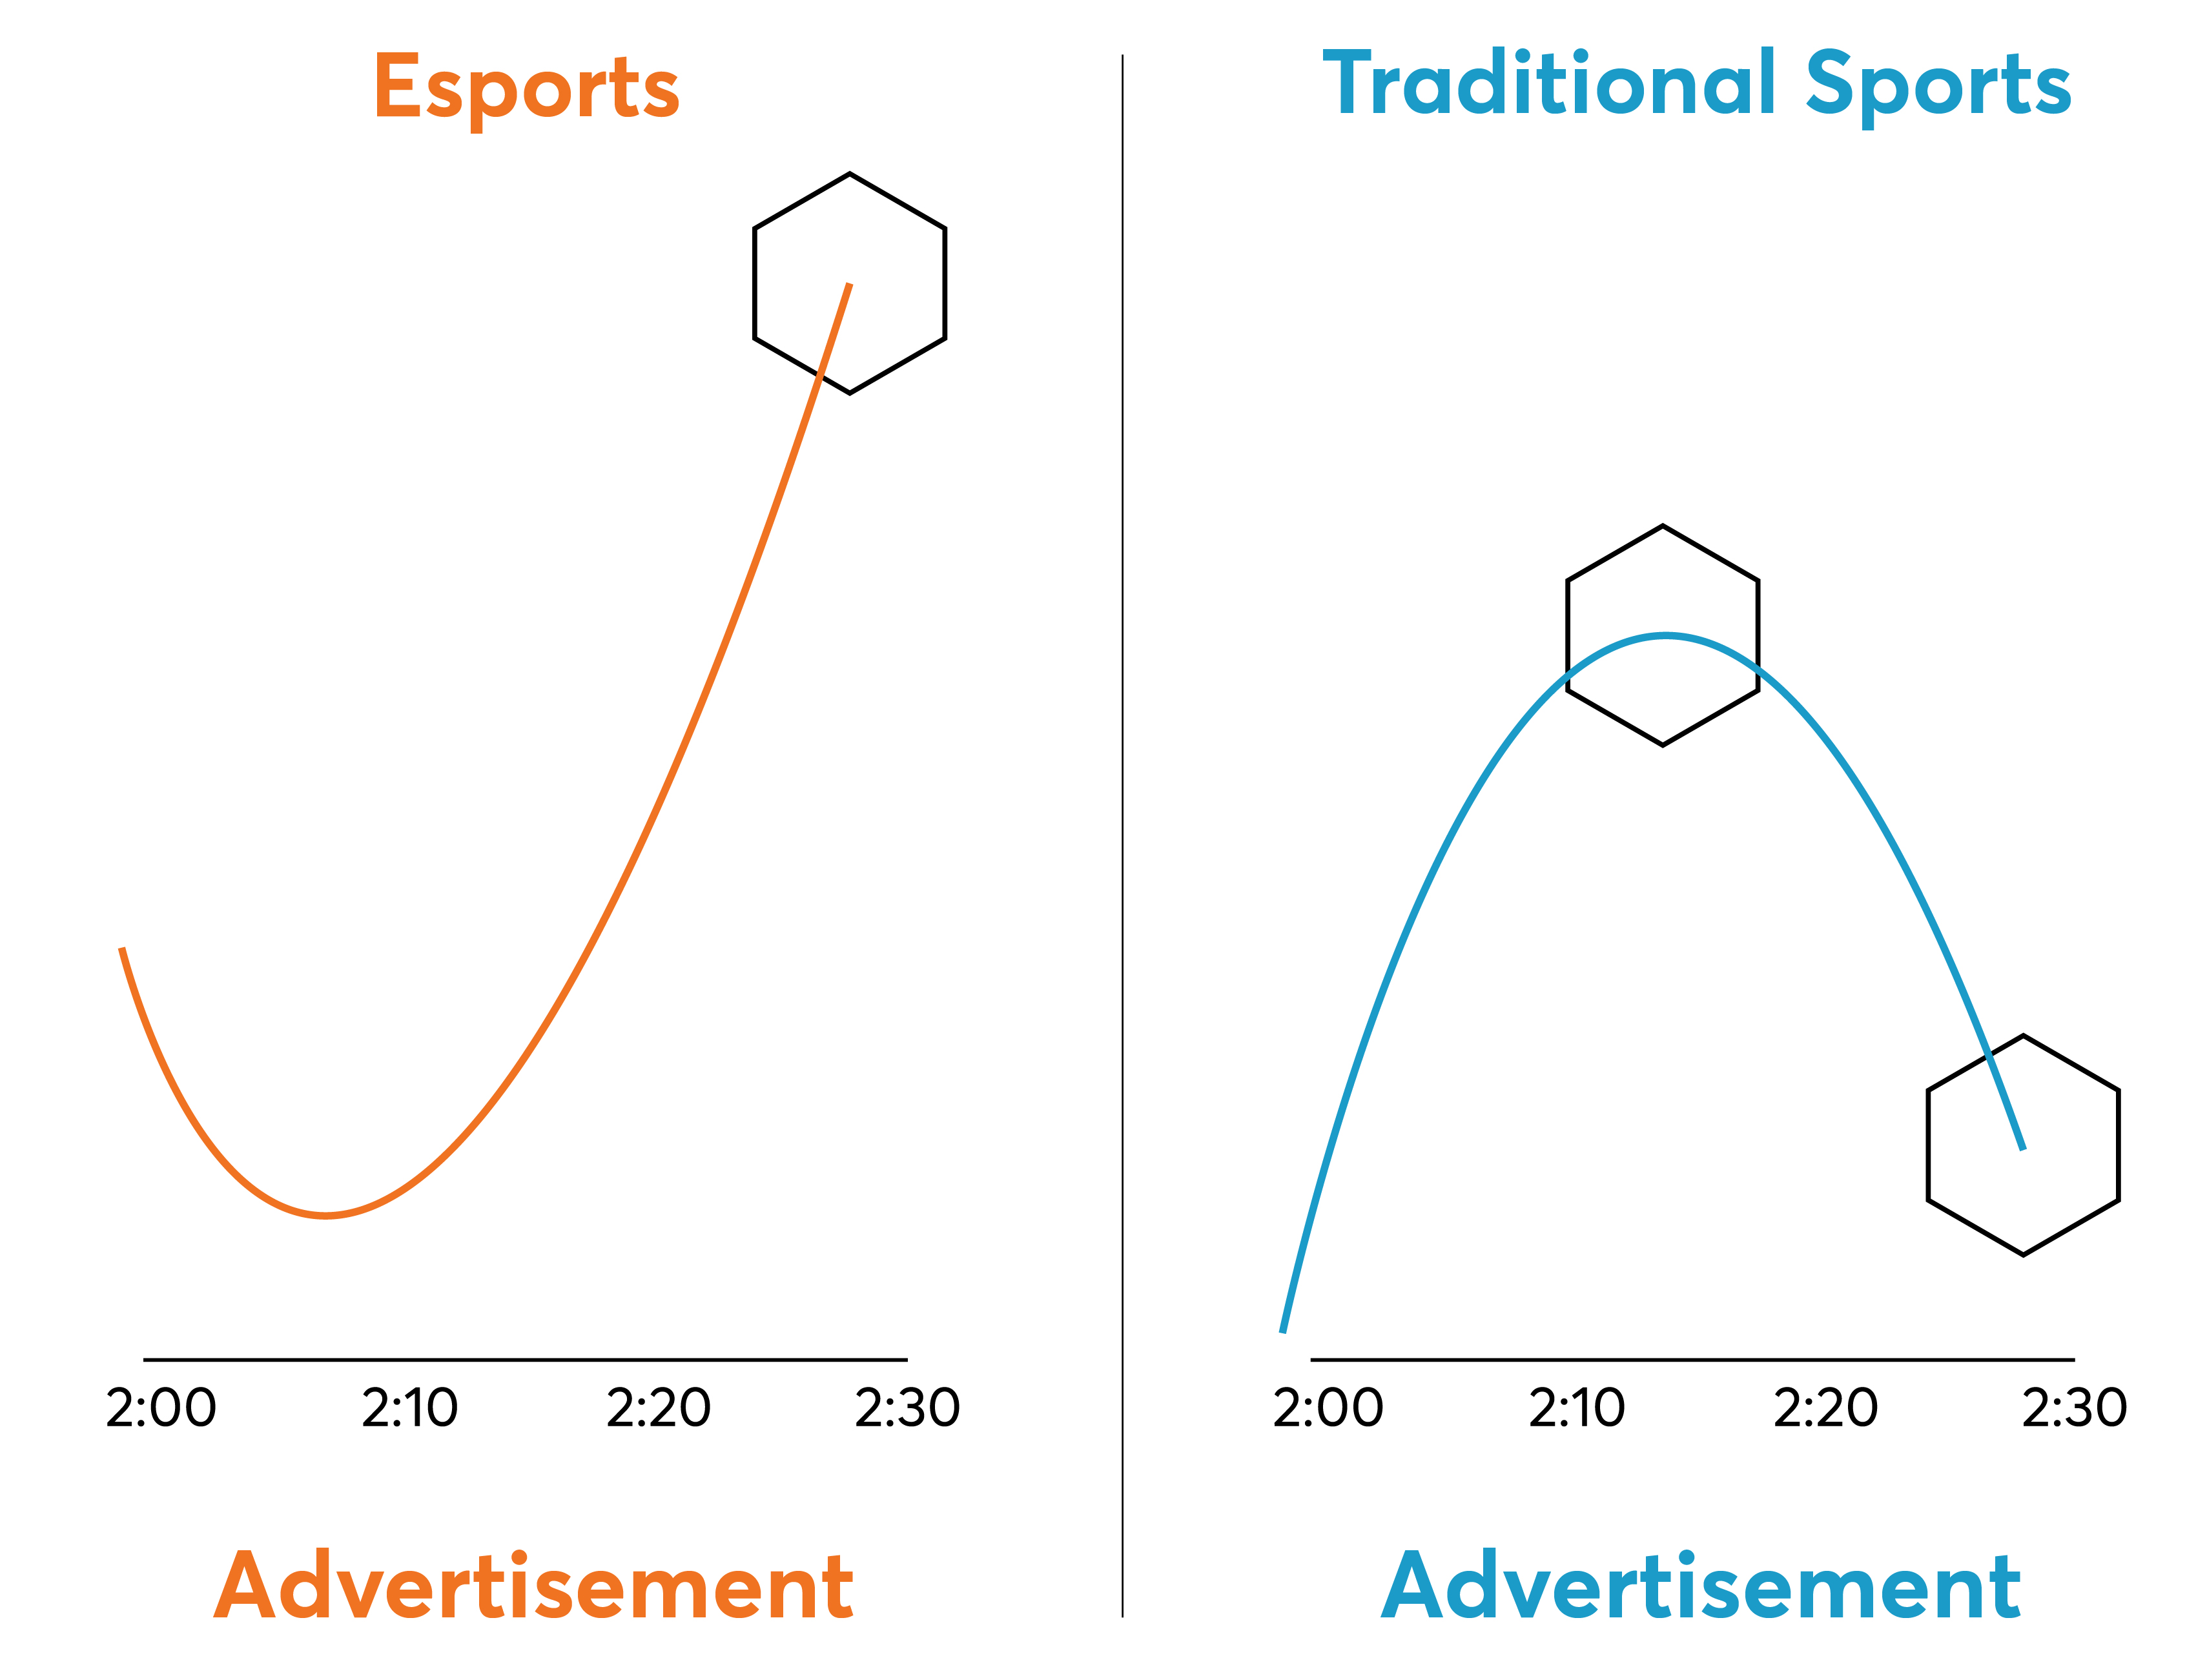 Vergleich der Werbeperformance von E-Sports mit traditionellen Sportarten 